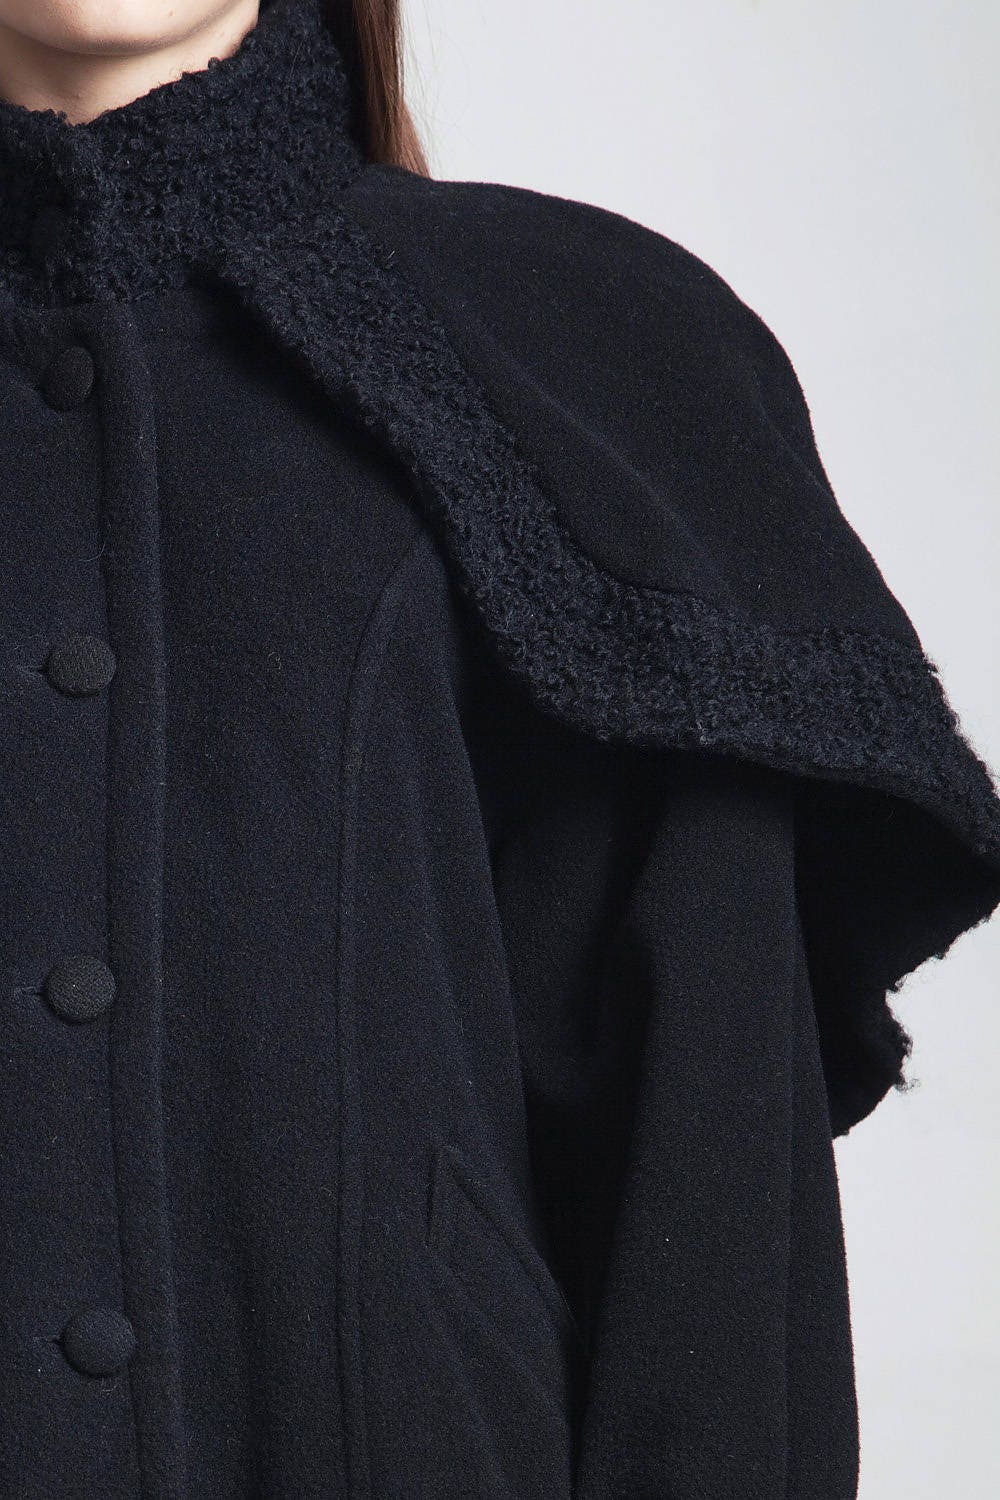 Cape Coat Vintage 80s Black Wool Jacket Bucle Texture Trims - Etsy